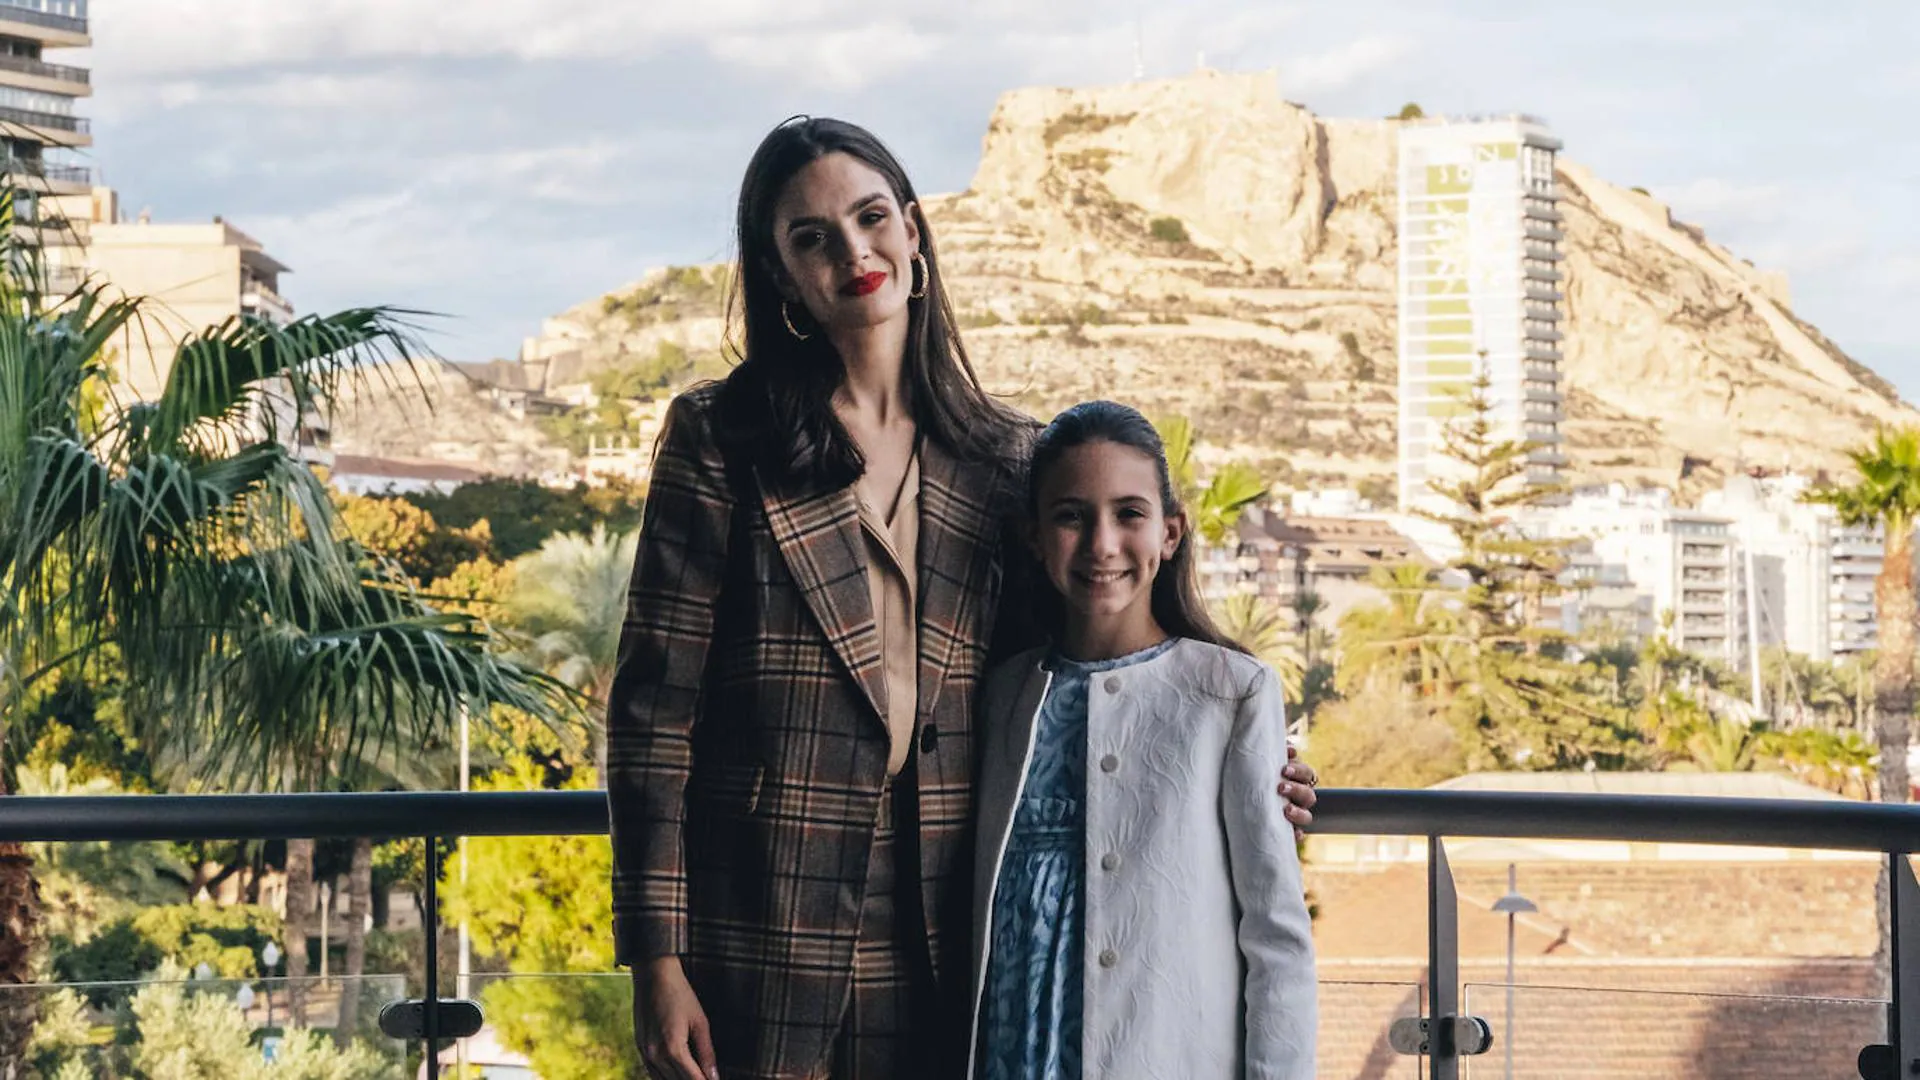 Belleas del foc 2023: Belén Mora e Inés Llavador | Dos belleas reinan en Alicante